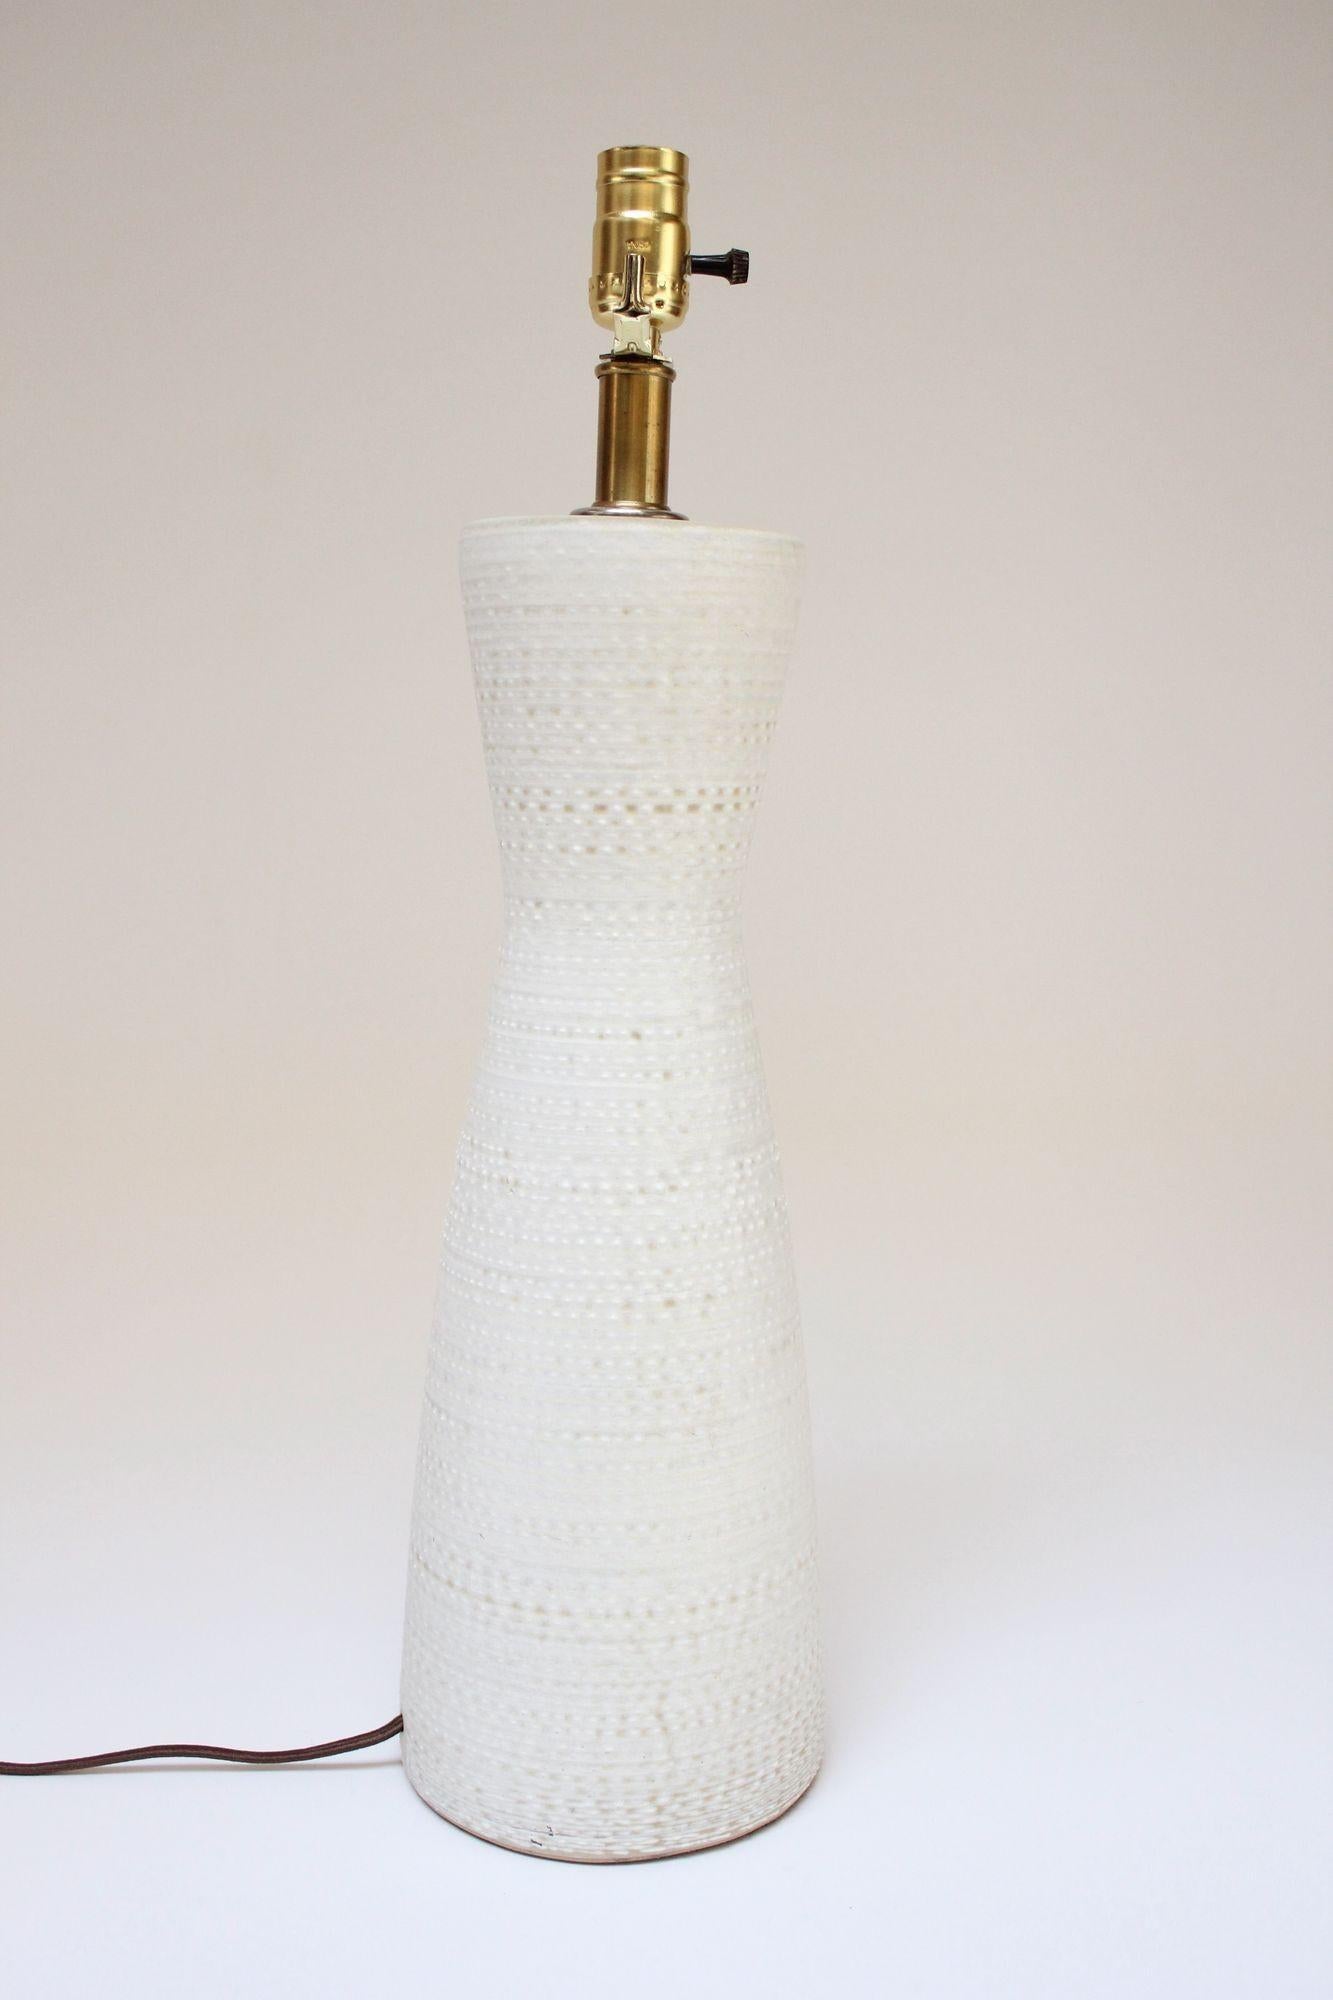 Lampe de table en céramique en forme de sablier en émail texturé/nubby blanc sur beige, conçue dans les années 1960 par Lee Rosen pour Design Technics. Forme sculpturale et moderniste avec une élégante tige et des accents en laiton.
Seule une légère